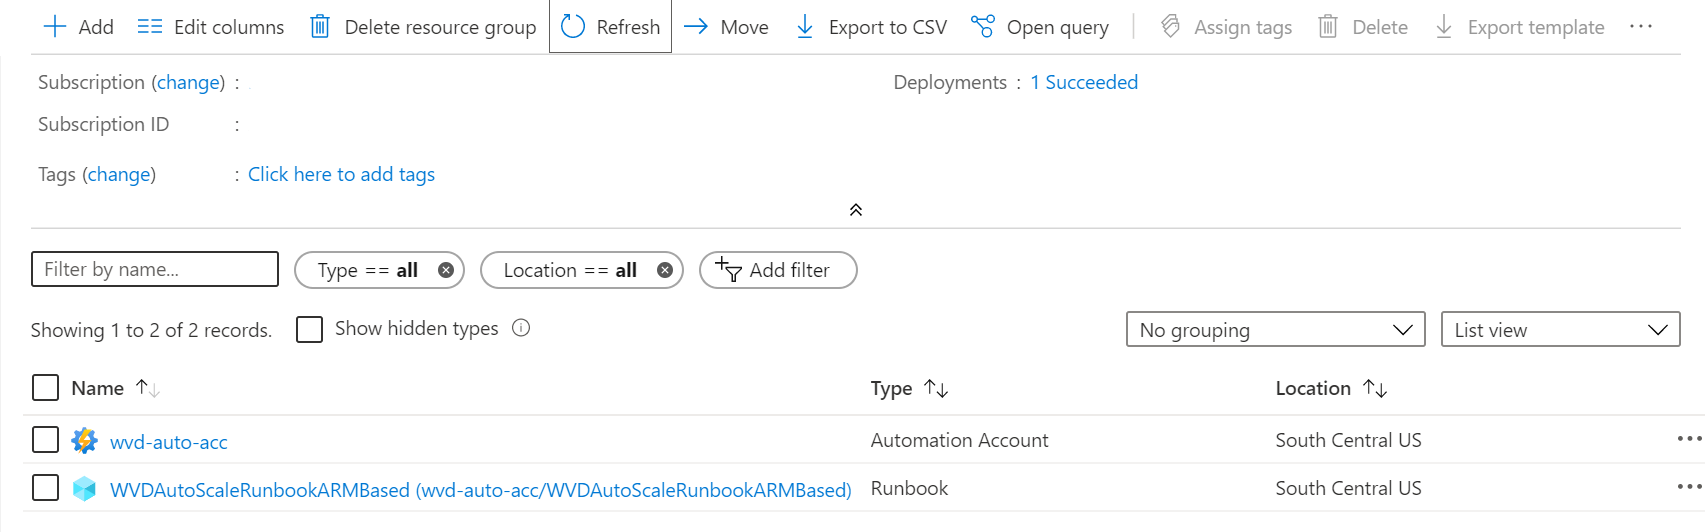 新しく作成した Azure Automation アカウントと Runbook を示す Azure の概要ページの画像。